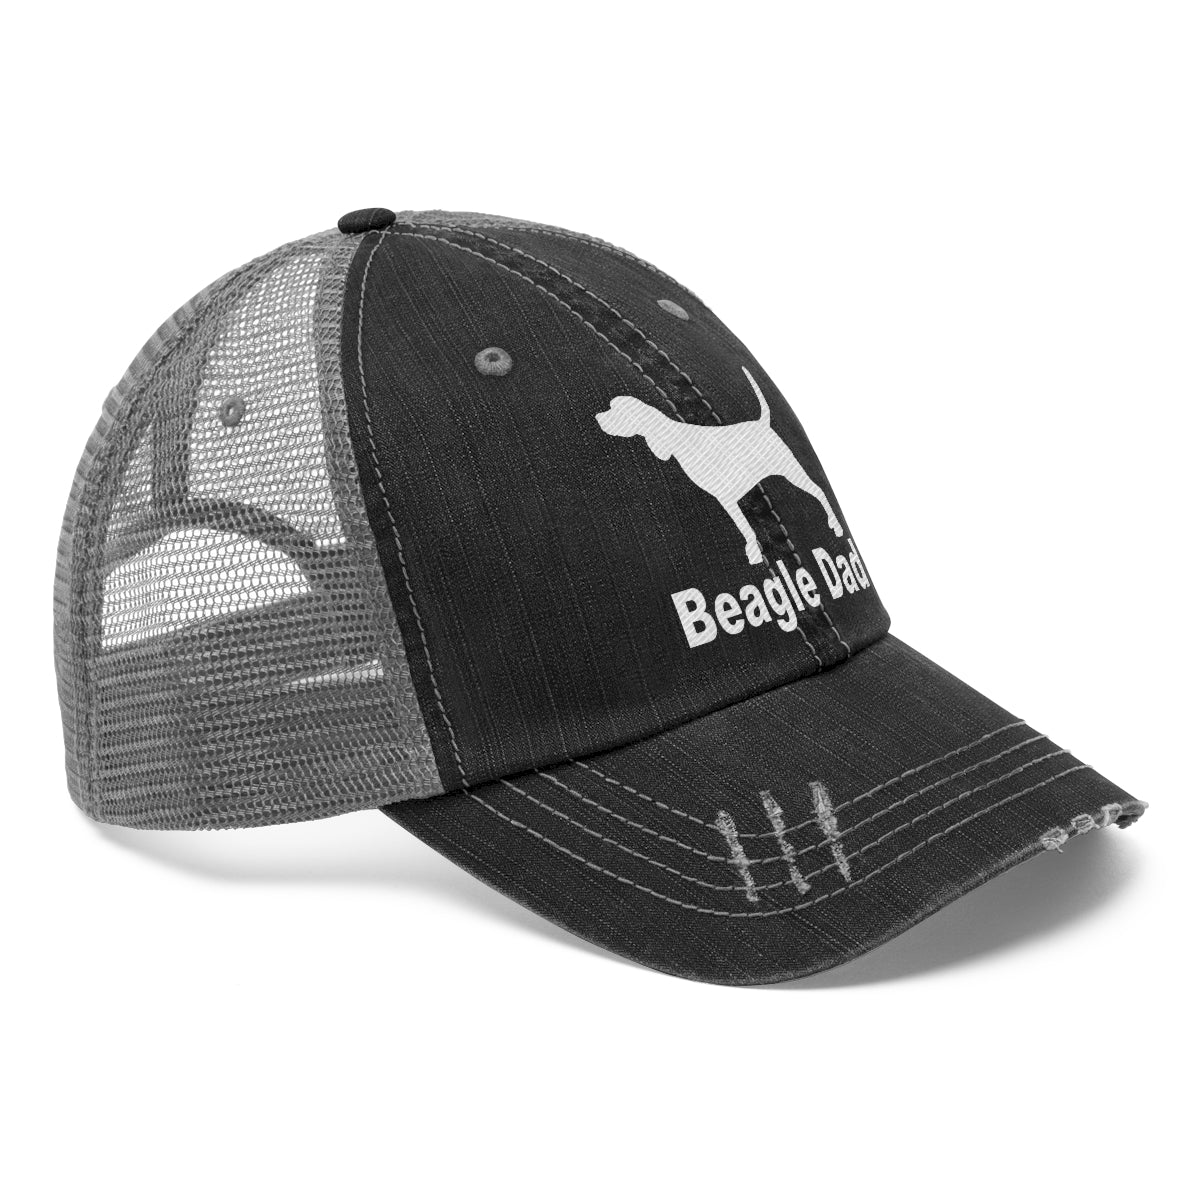 Beagle Dad - Unisex Trucker Hat